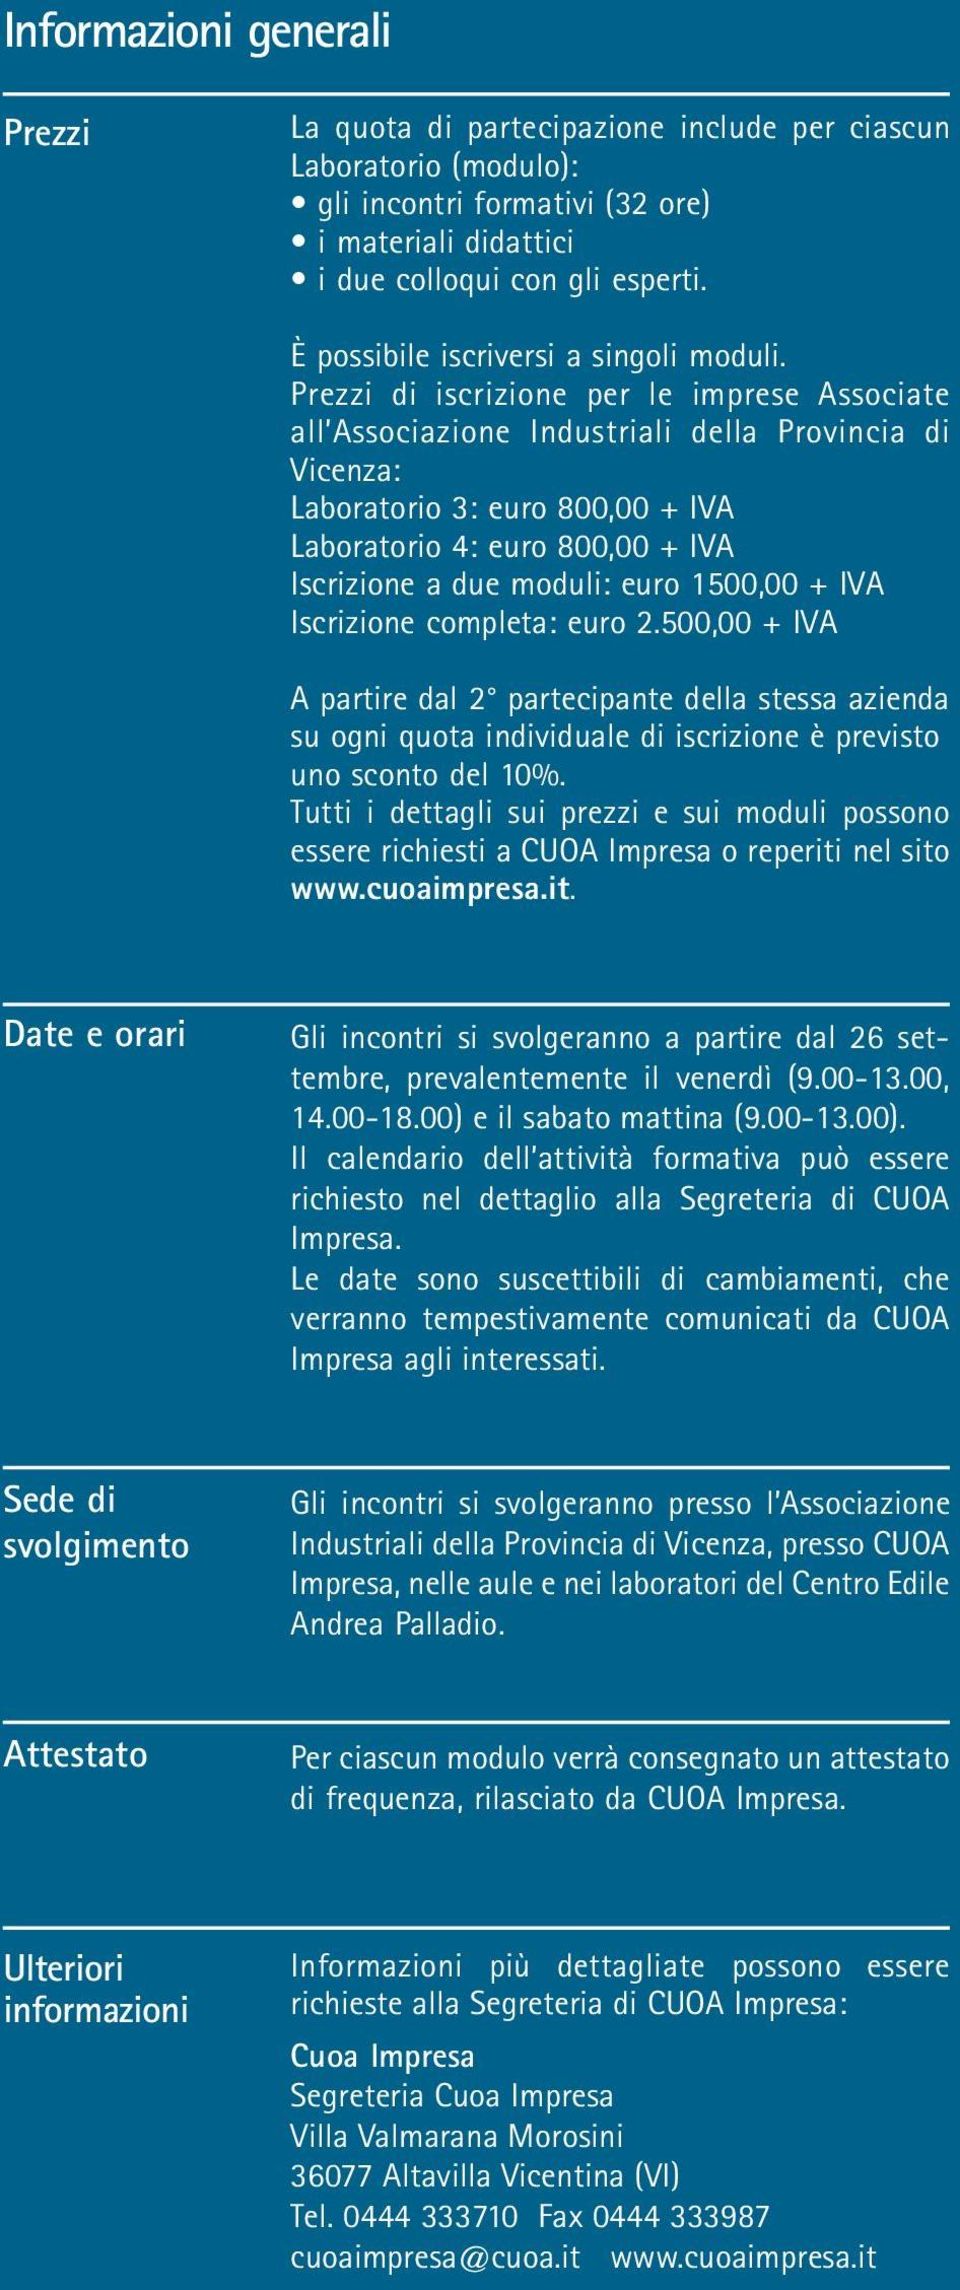 Prezzi di iscrizione per le imprese Associate all Associazione Industriali della Provincia di Vicenza: Laboratorio 3: euro 800,00 + IVA Laboratorio 4: euro 800,00 + IVA Iscrizione a due moduli: euro